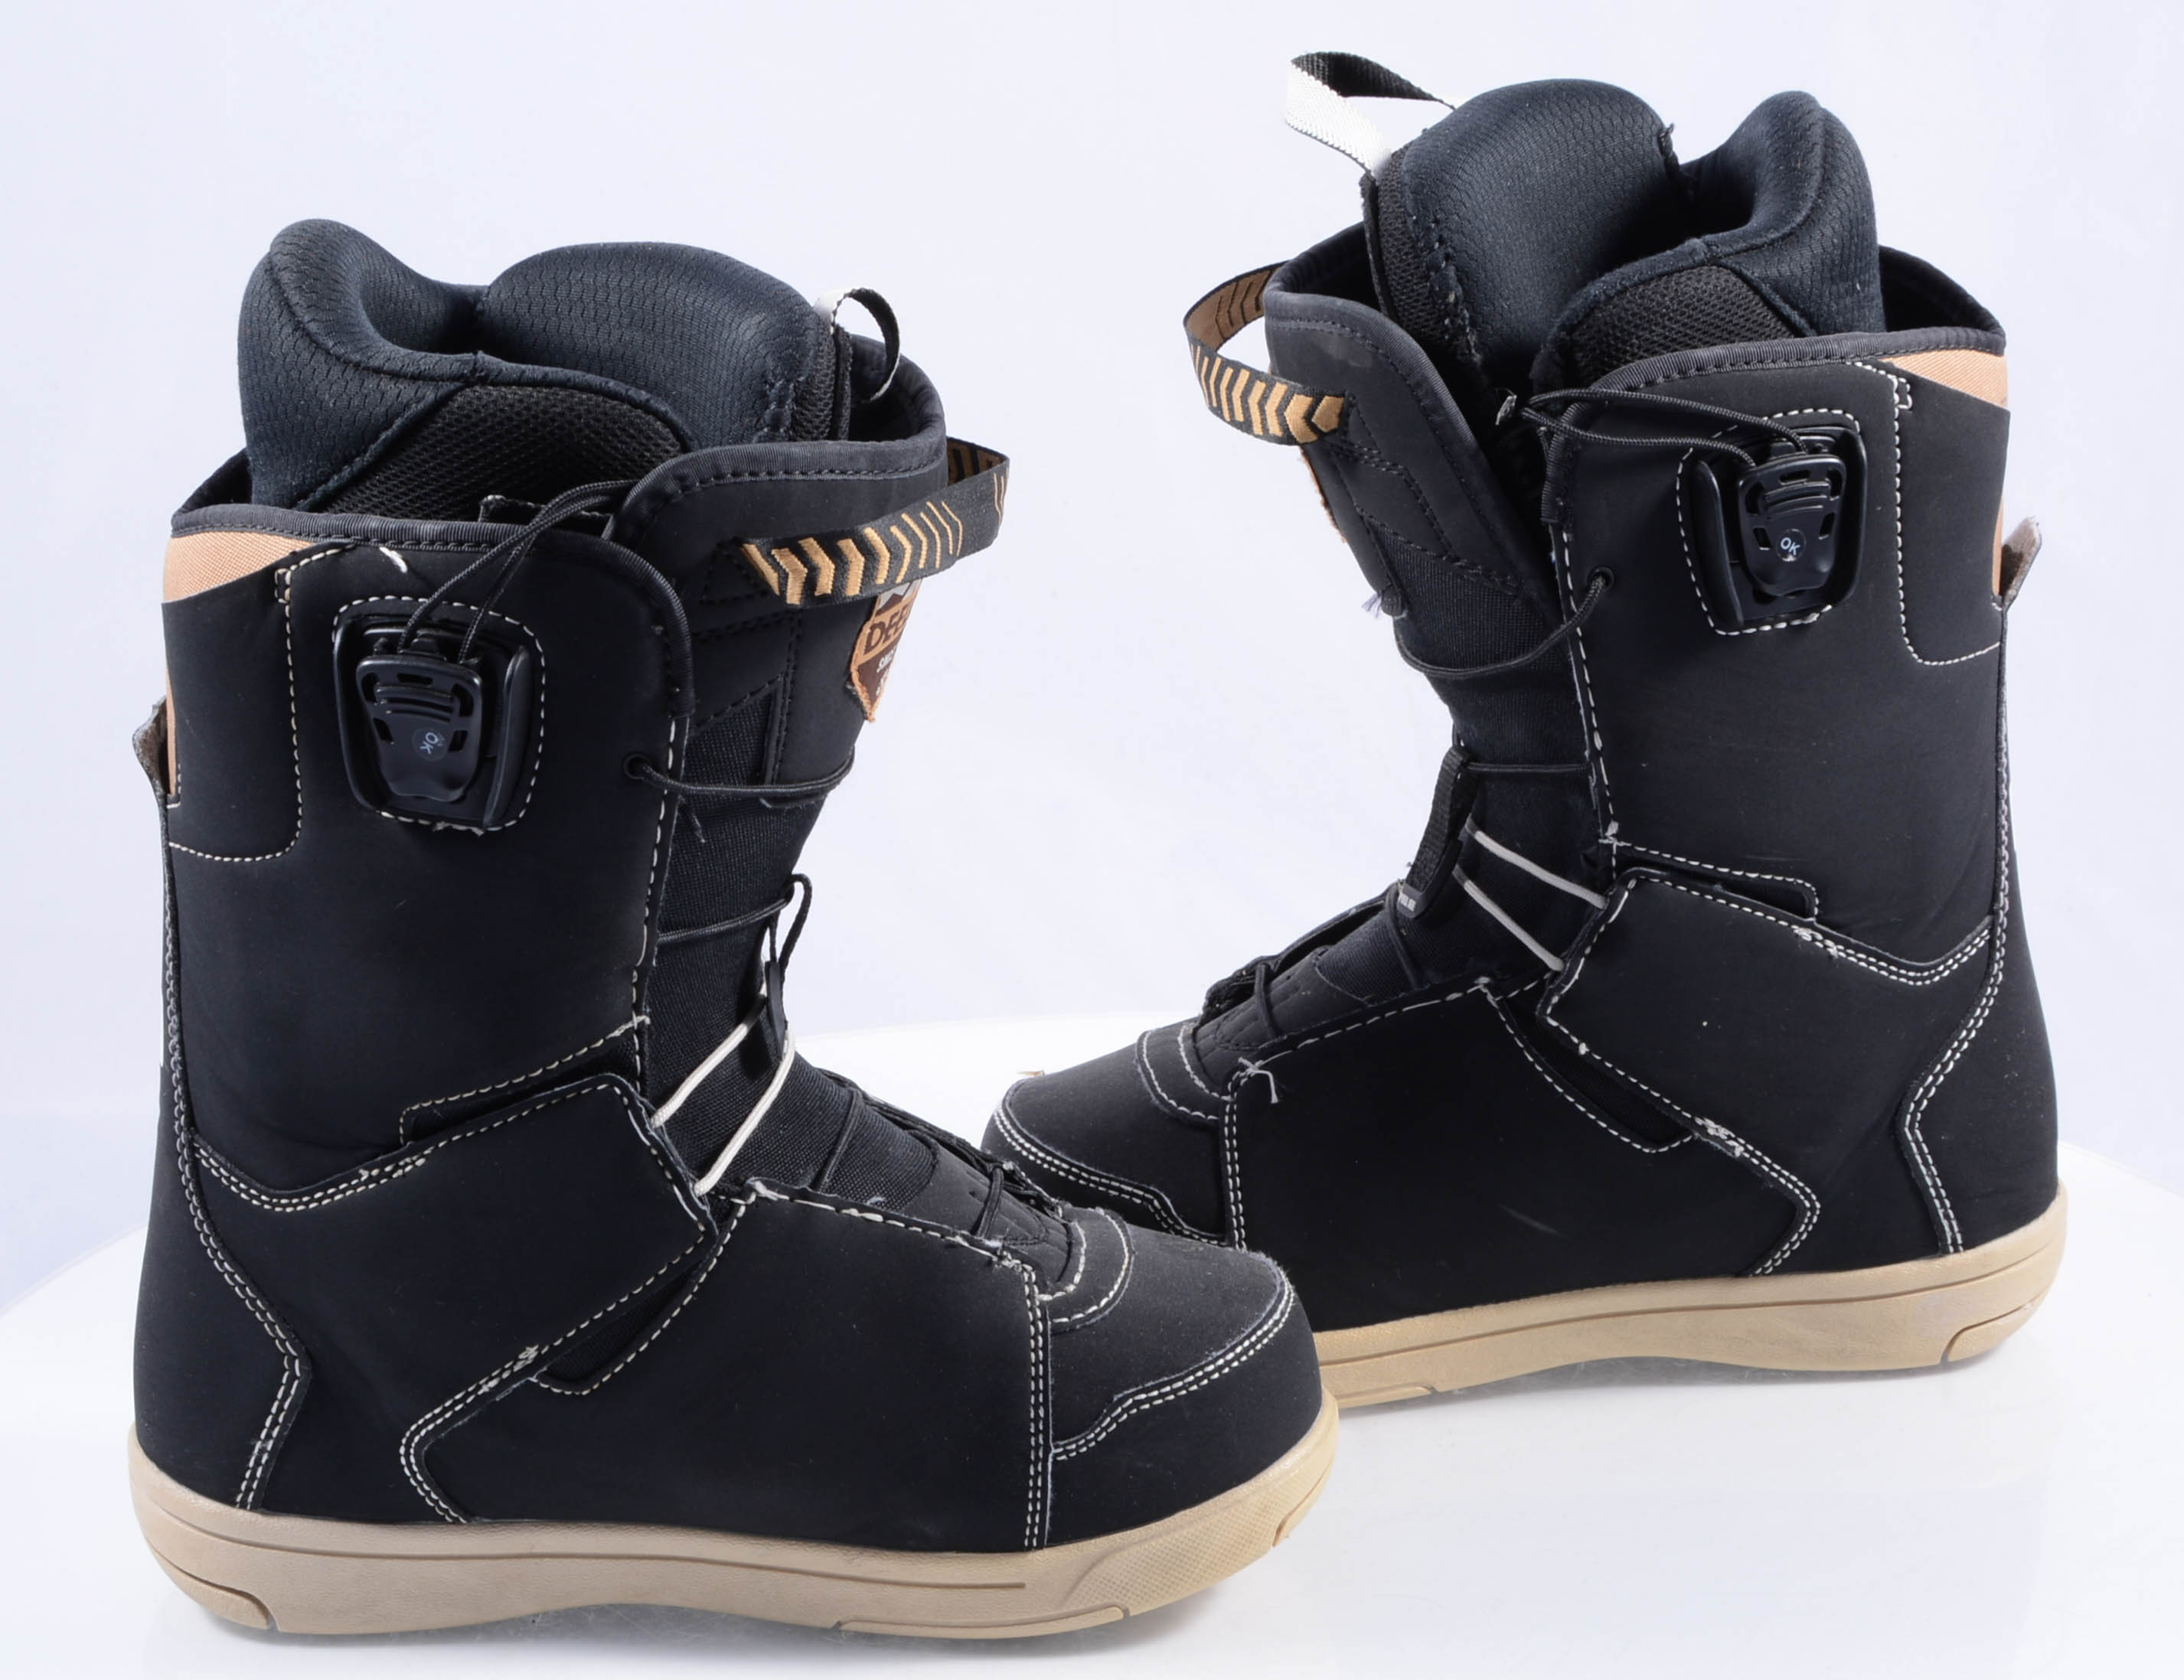 verschil nogmaals Afm snowboard schoenen DEELUXE CHOICE, custom flex, backbone, tps shield,  black/brown ( TOP staat ) - Mardosport.nl